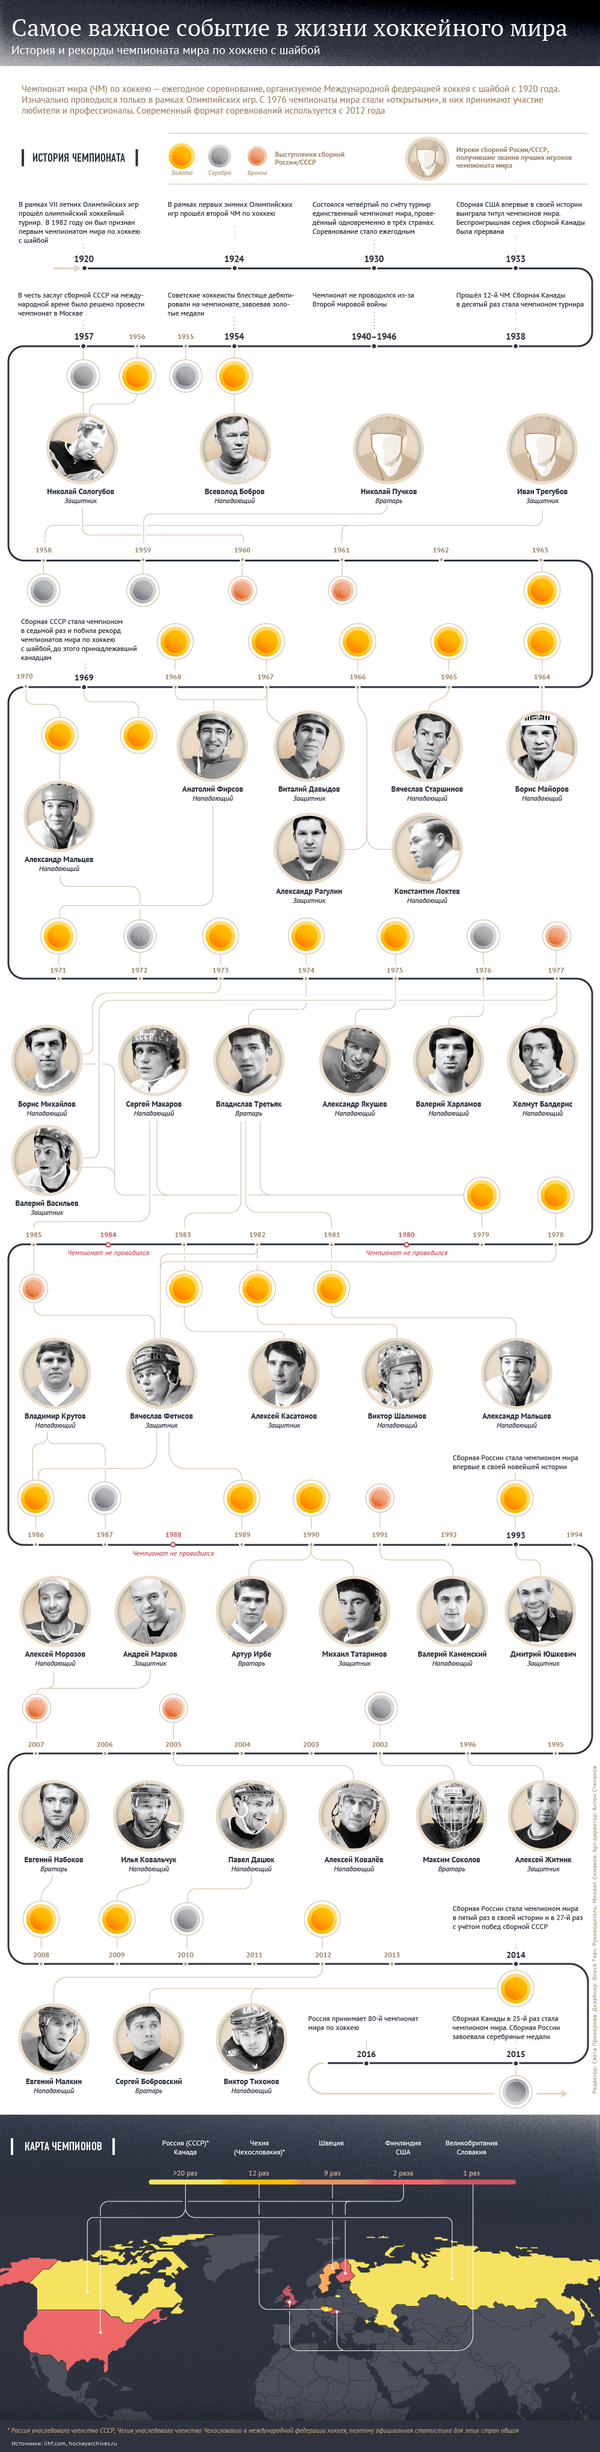 История и рекорды чемпионата мира по хоккею - Sputnik Латвия